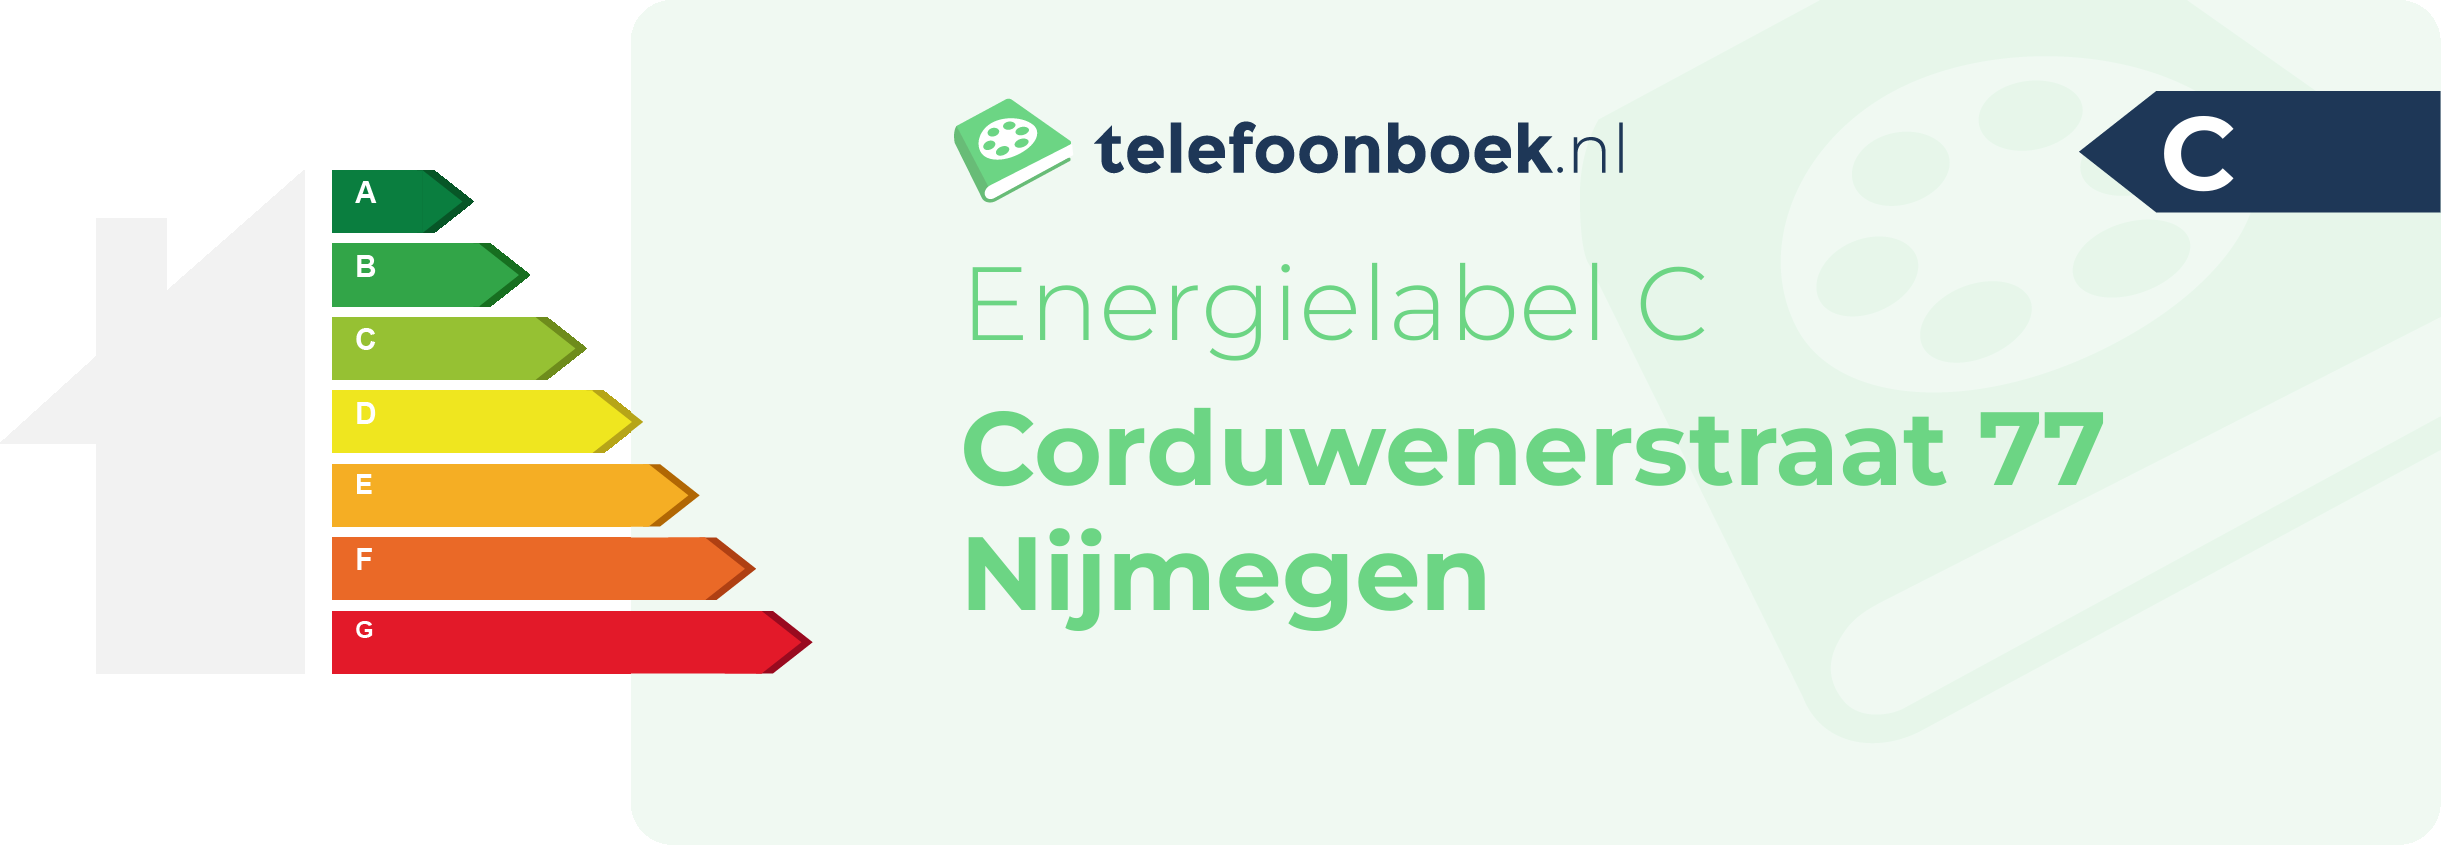 Energielabel Corduwenerstraat 77 Nijmegen